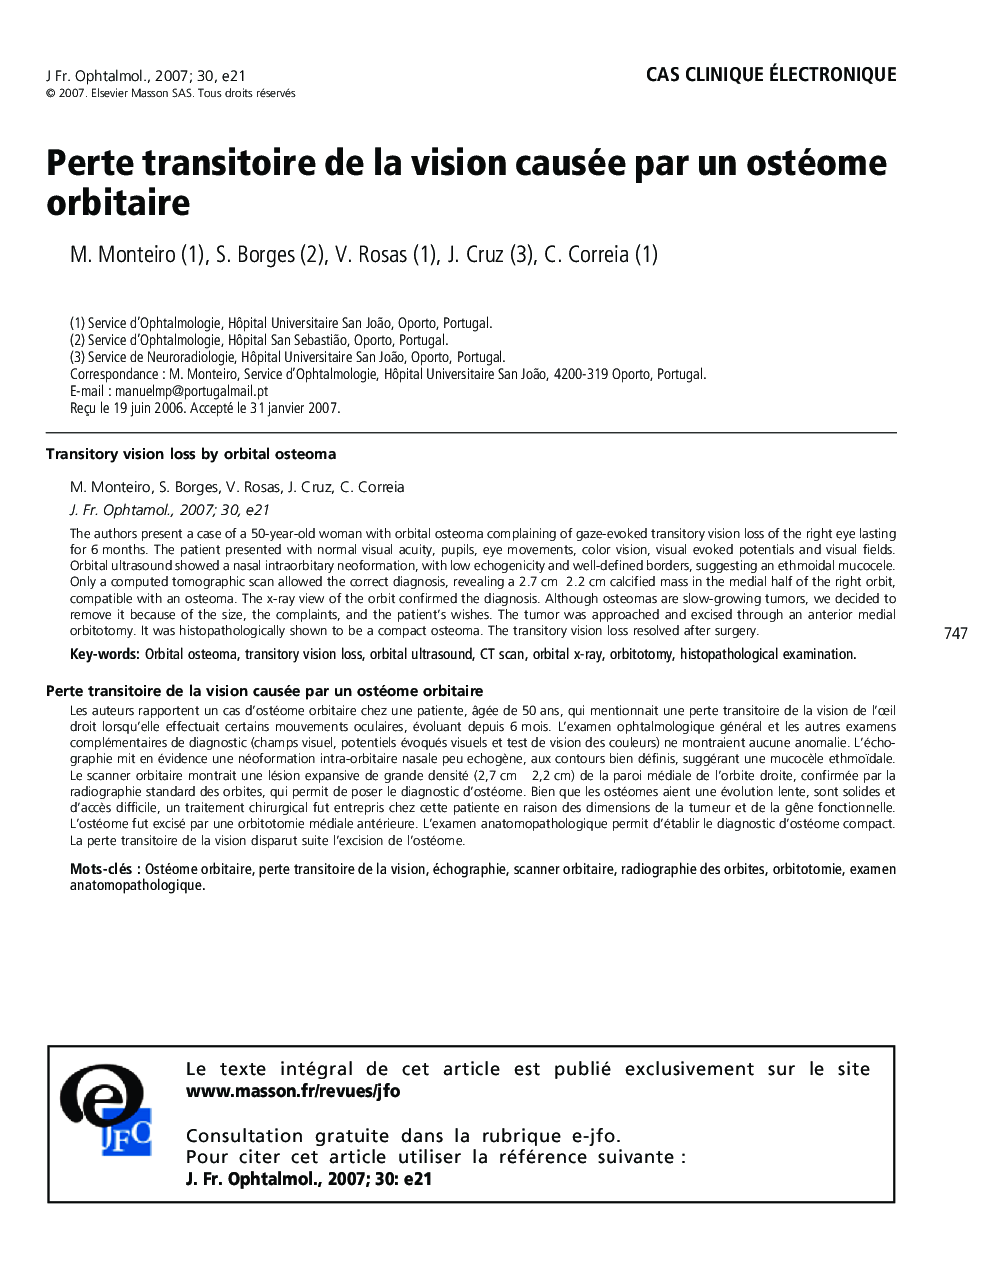 Cas clinique électroniquePerte transitoire de la vision causée par un ostéome orbitaireTransitory vision loss by orbital osteoma